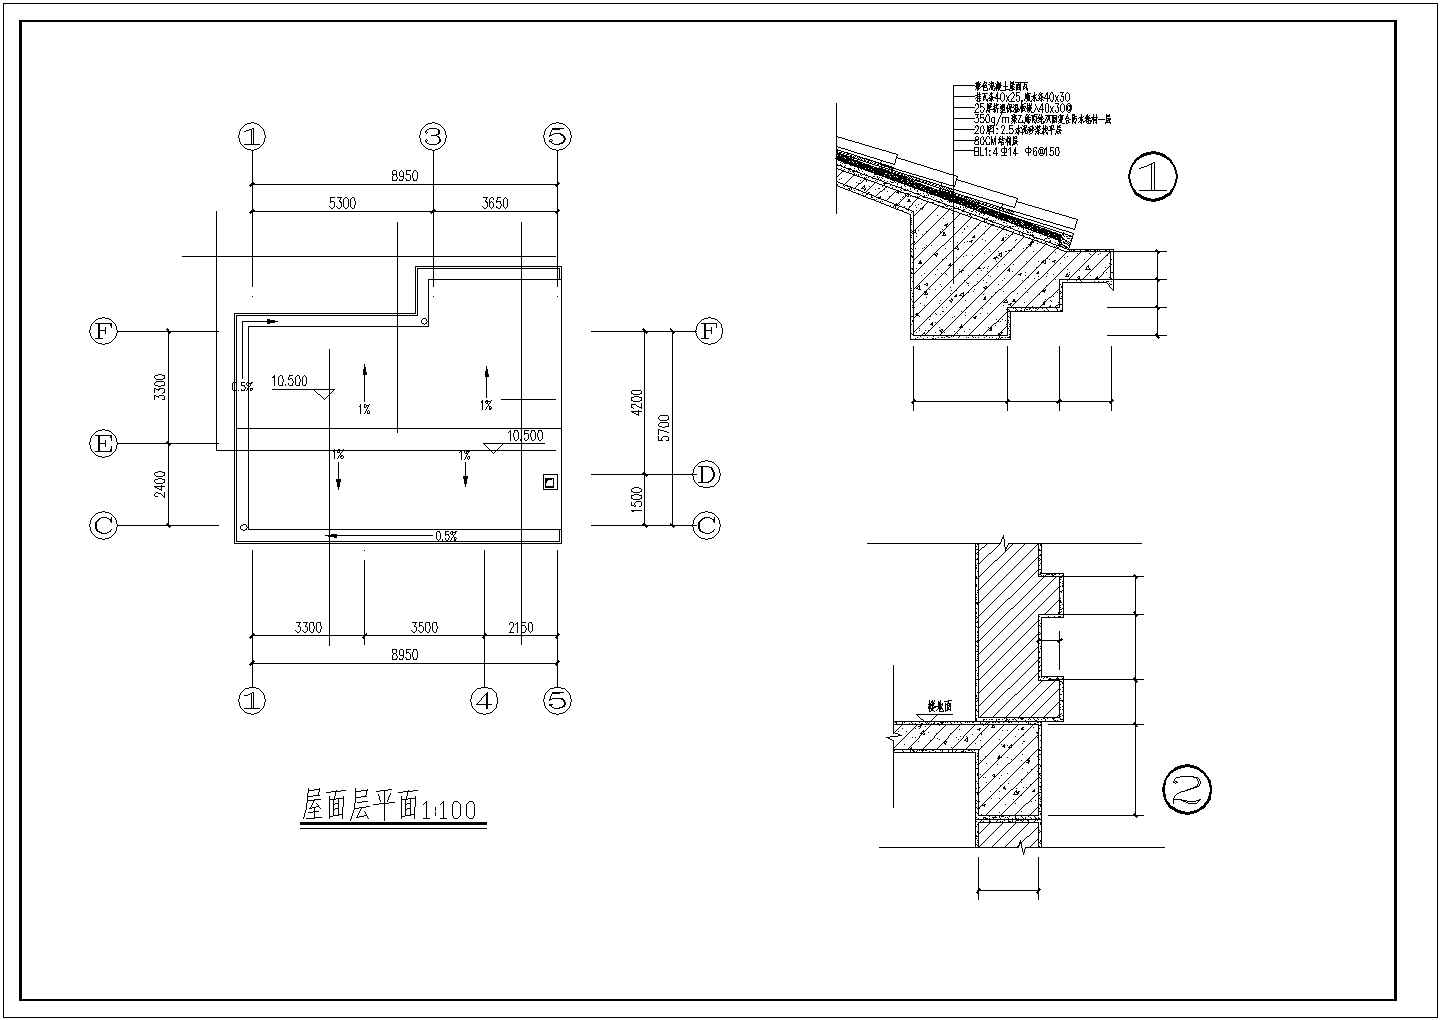 重庆市某别墅山庄380平米4层砖混单体别墅平立剖面设计CAD图纸